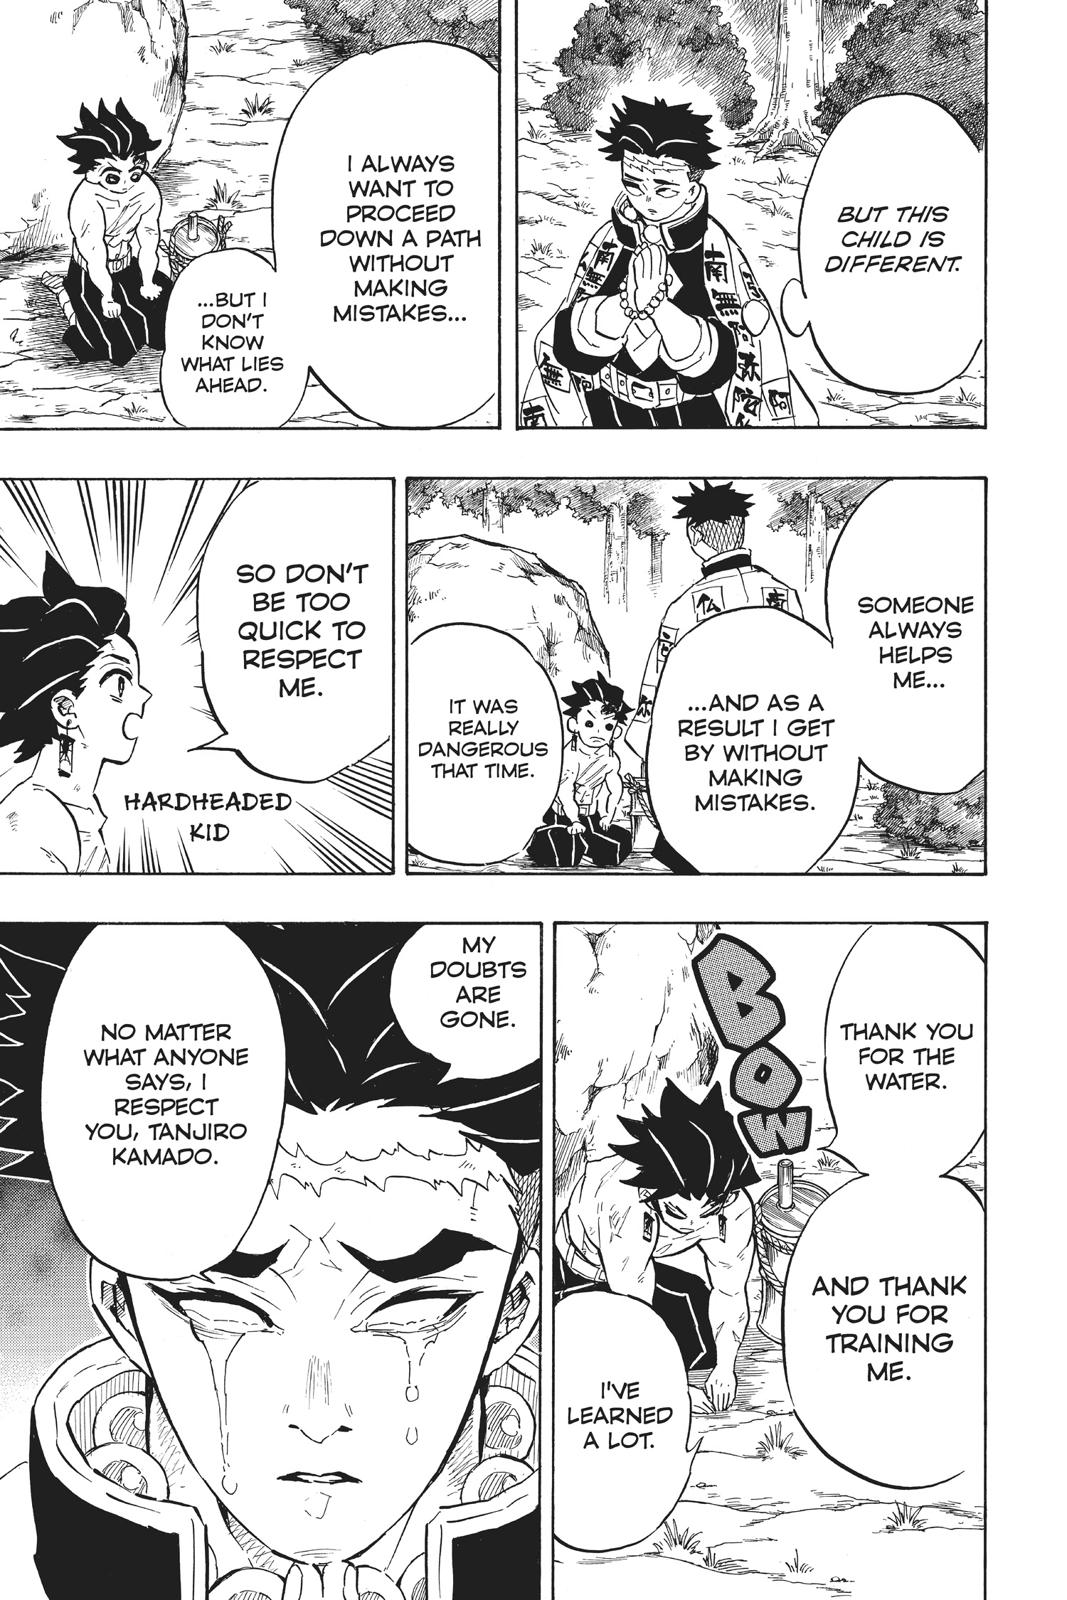 Demon Slayer Manga Manga Chapter - 135 - image 9